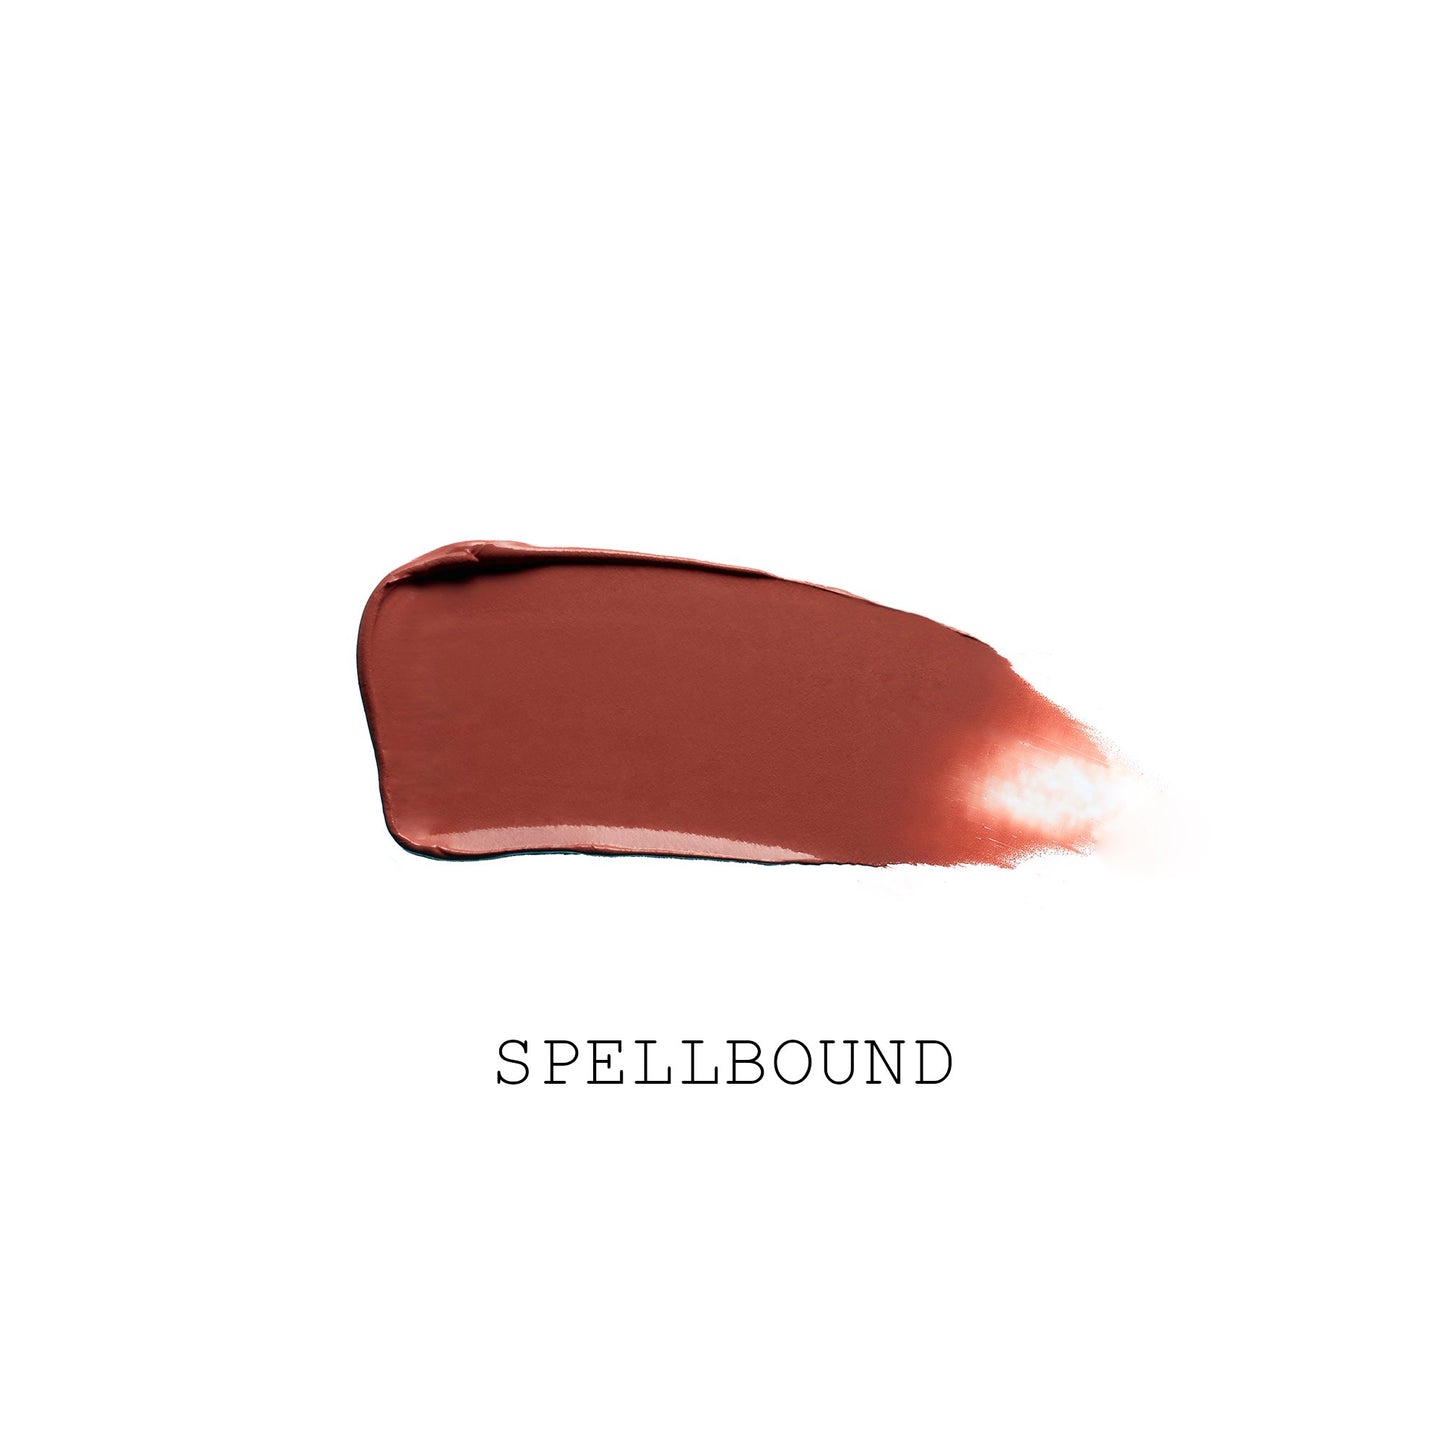 Pat McGrath LIQUILUST™: Legendary Wear Matte Lipstick - Spellbound (Muted Sienna Rose)